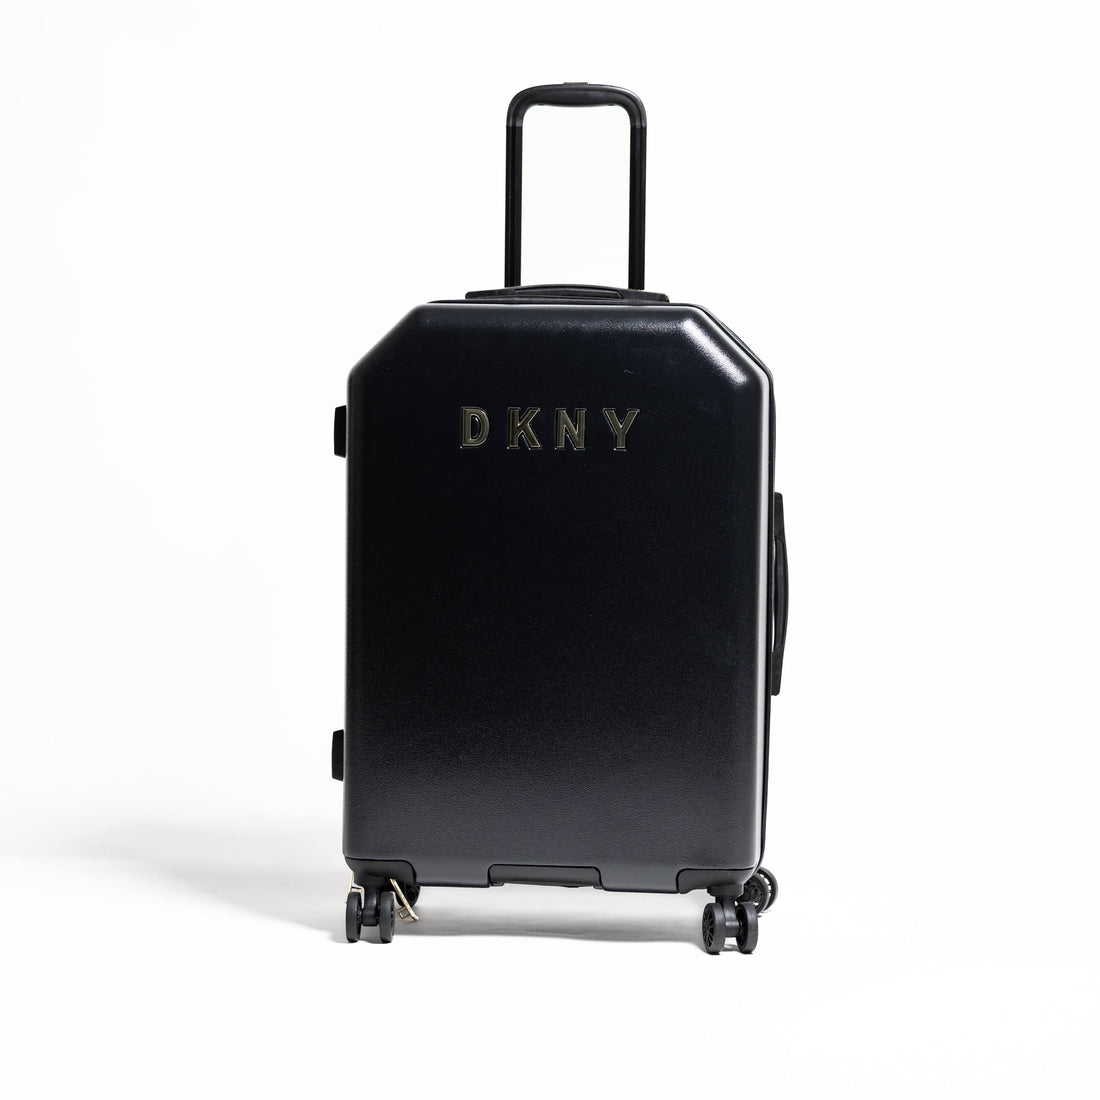 DKNY Black Medium Luggage_DH418ML7_BLK_01